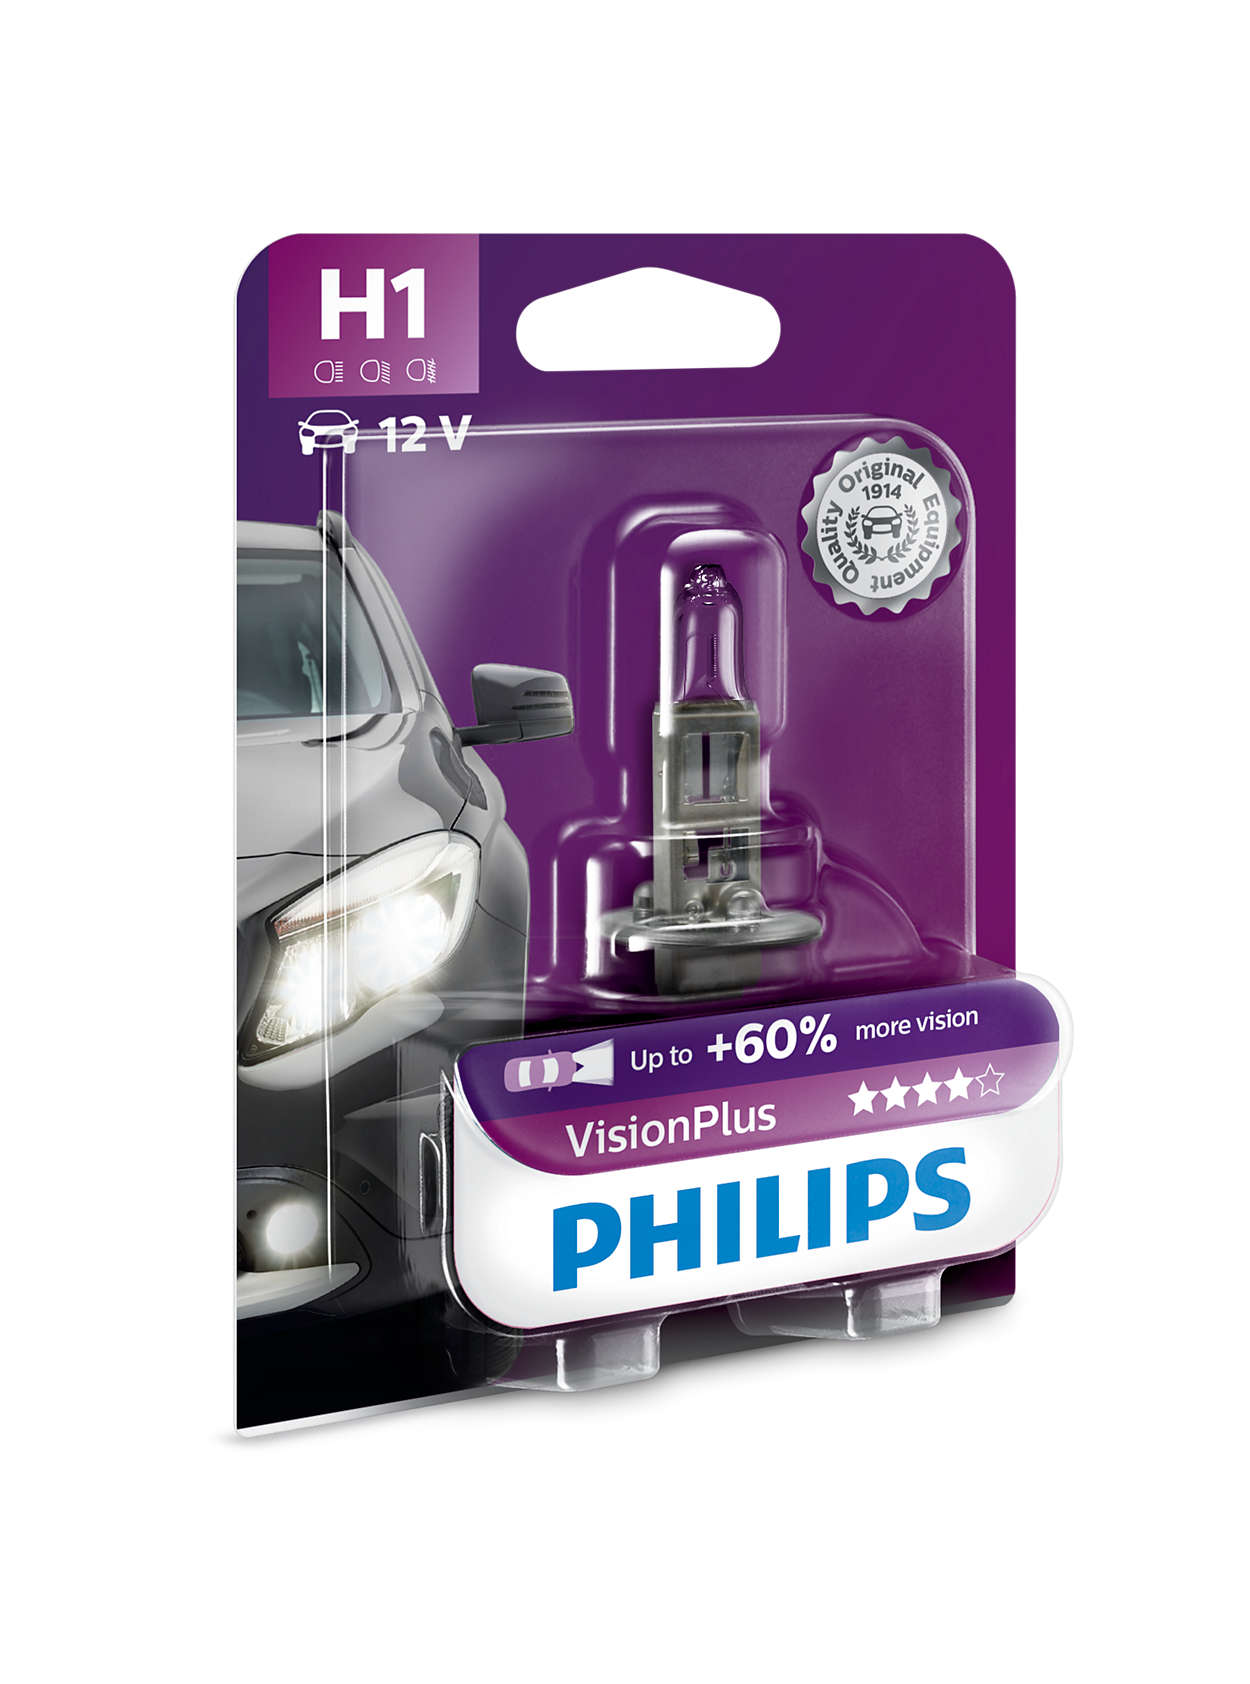 Philips vision plus h7 - Unser Gewinner 